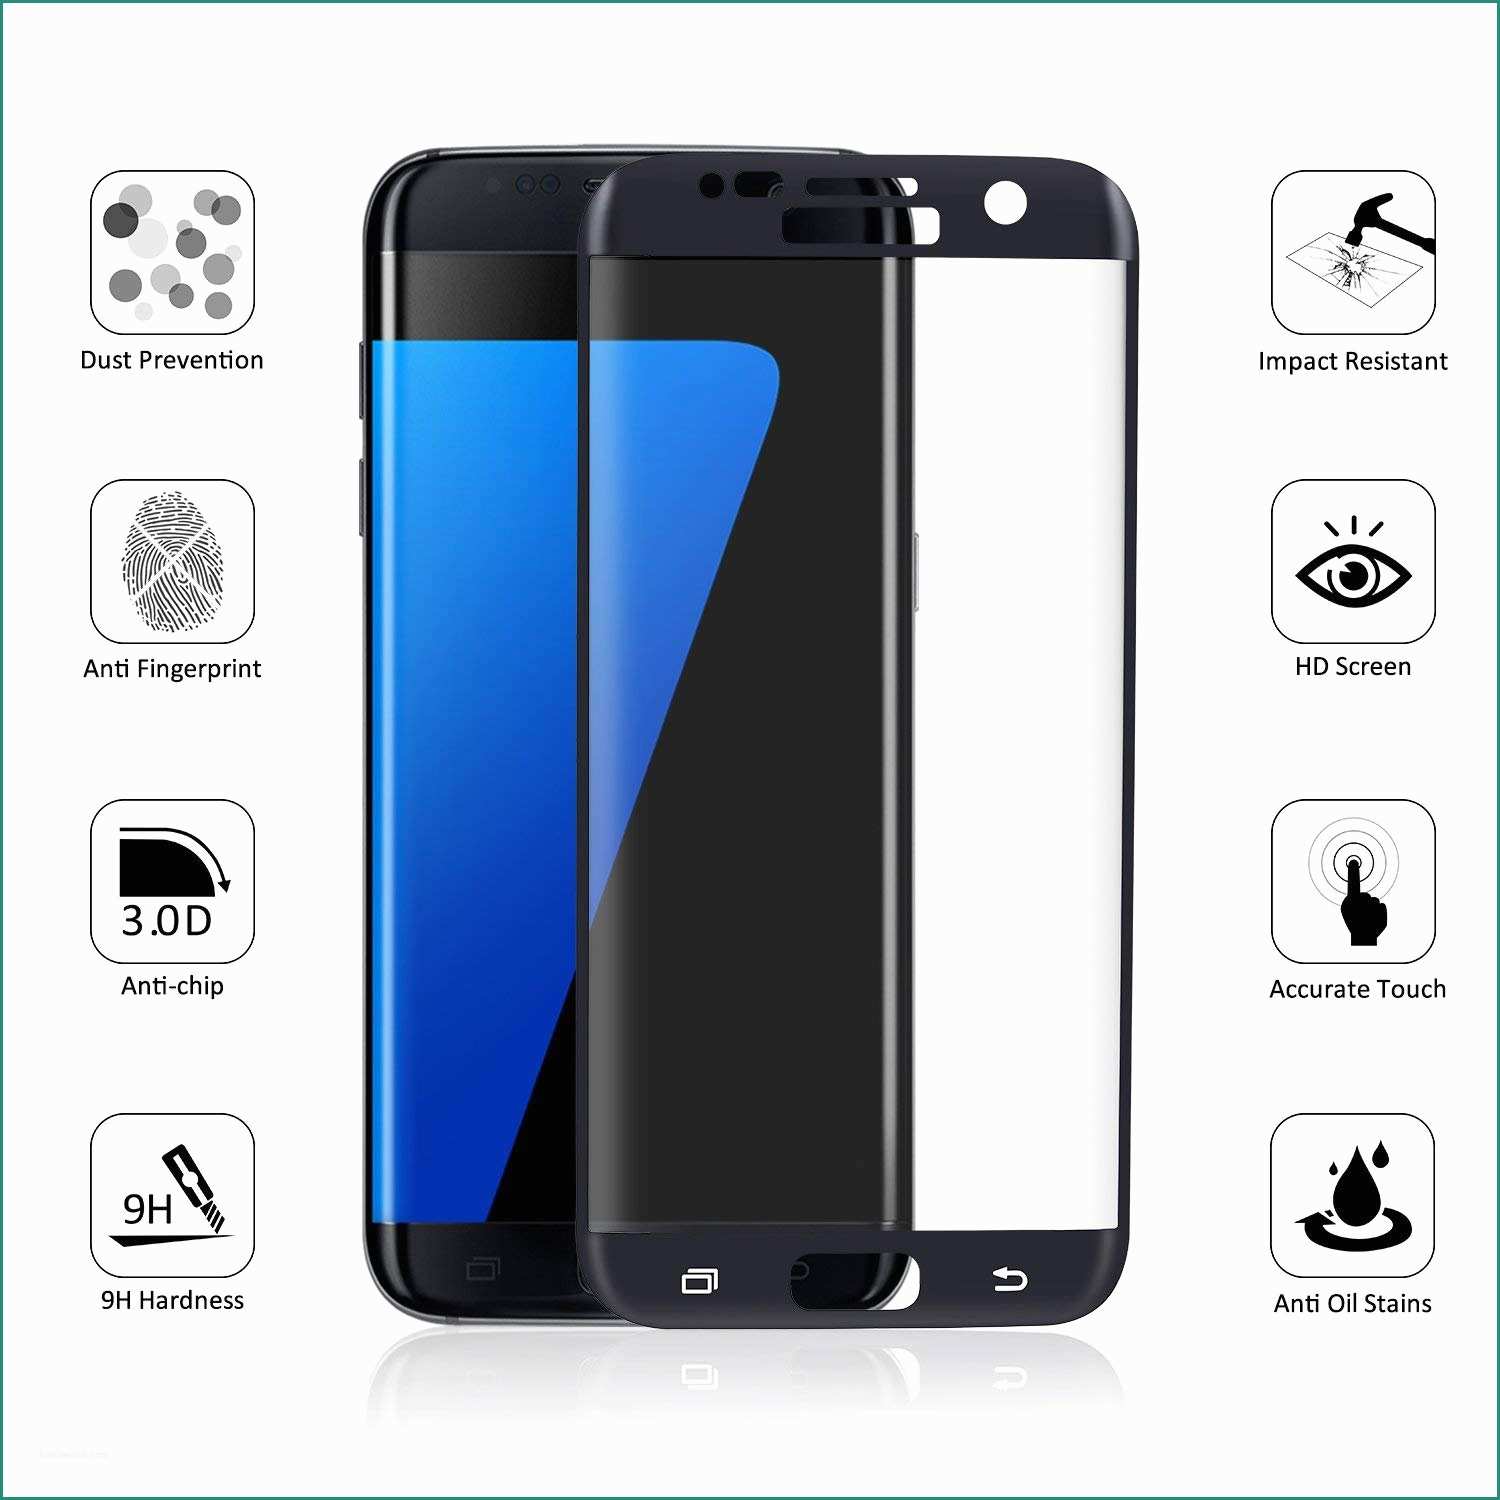 Materassi Offerte Tv E toplus 3d Curva Pellicola Protettiva Per Samsung Galaxy S7 Edge E